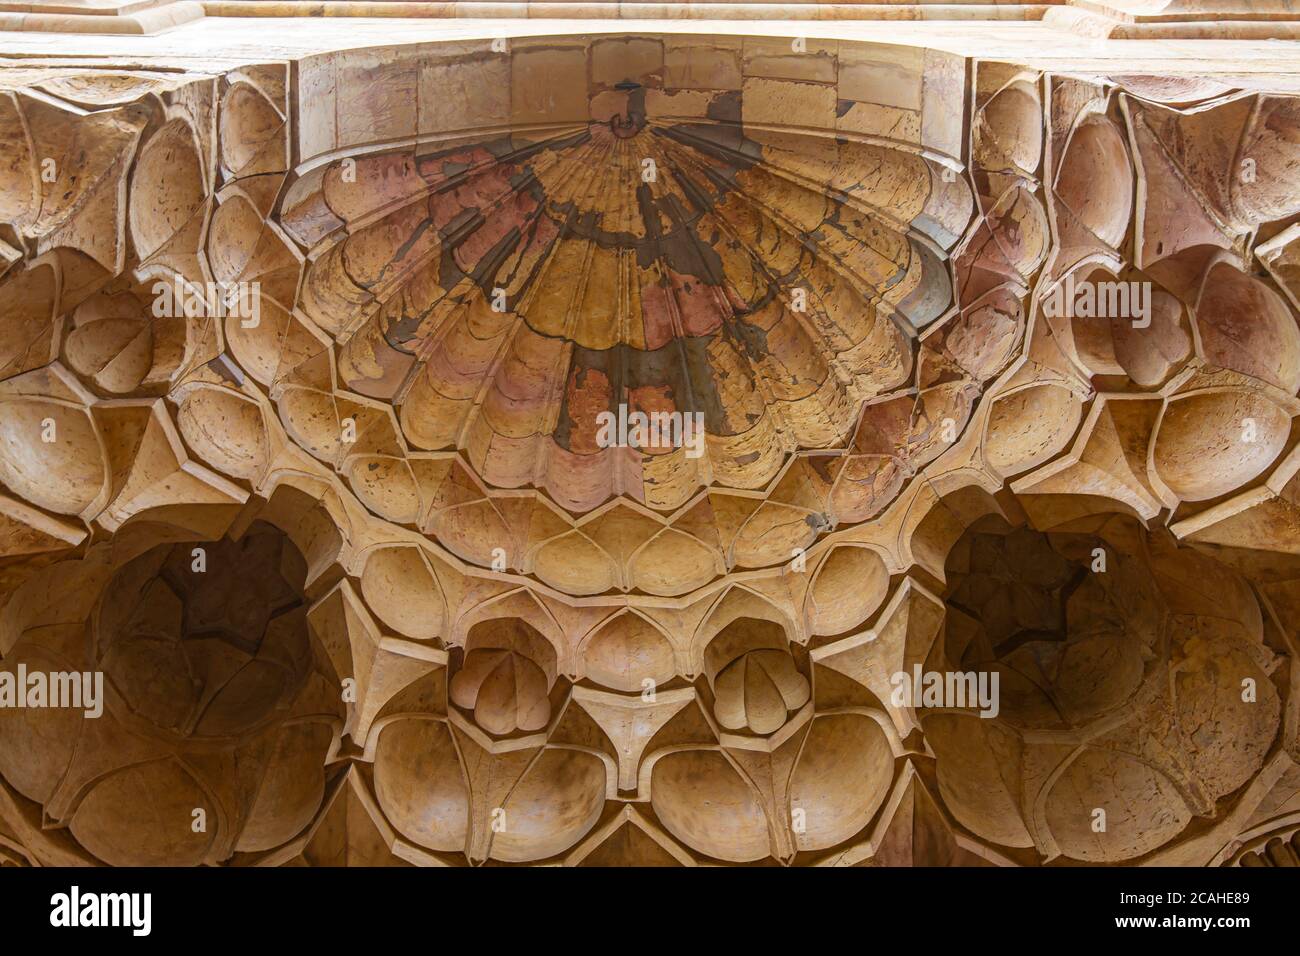 Damas, Syrie 03/28/2010: Vue de bug des amas de dôme concave ou demi-dôme en pierre sculptures décorant le plafond d'une porte dans un histoi Banque D'Images